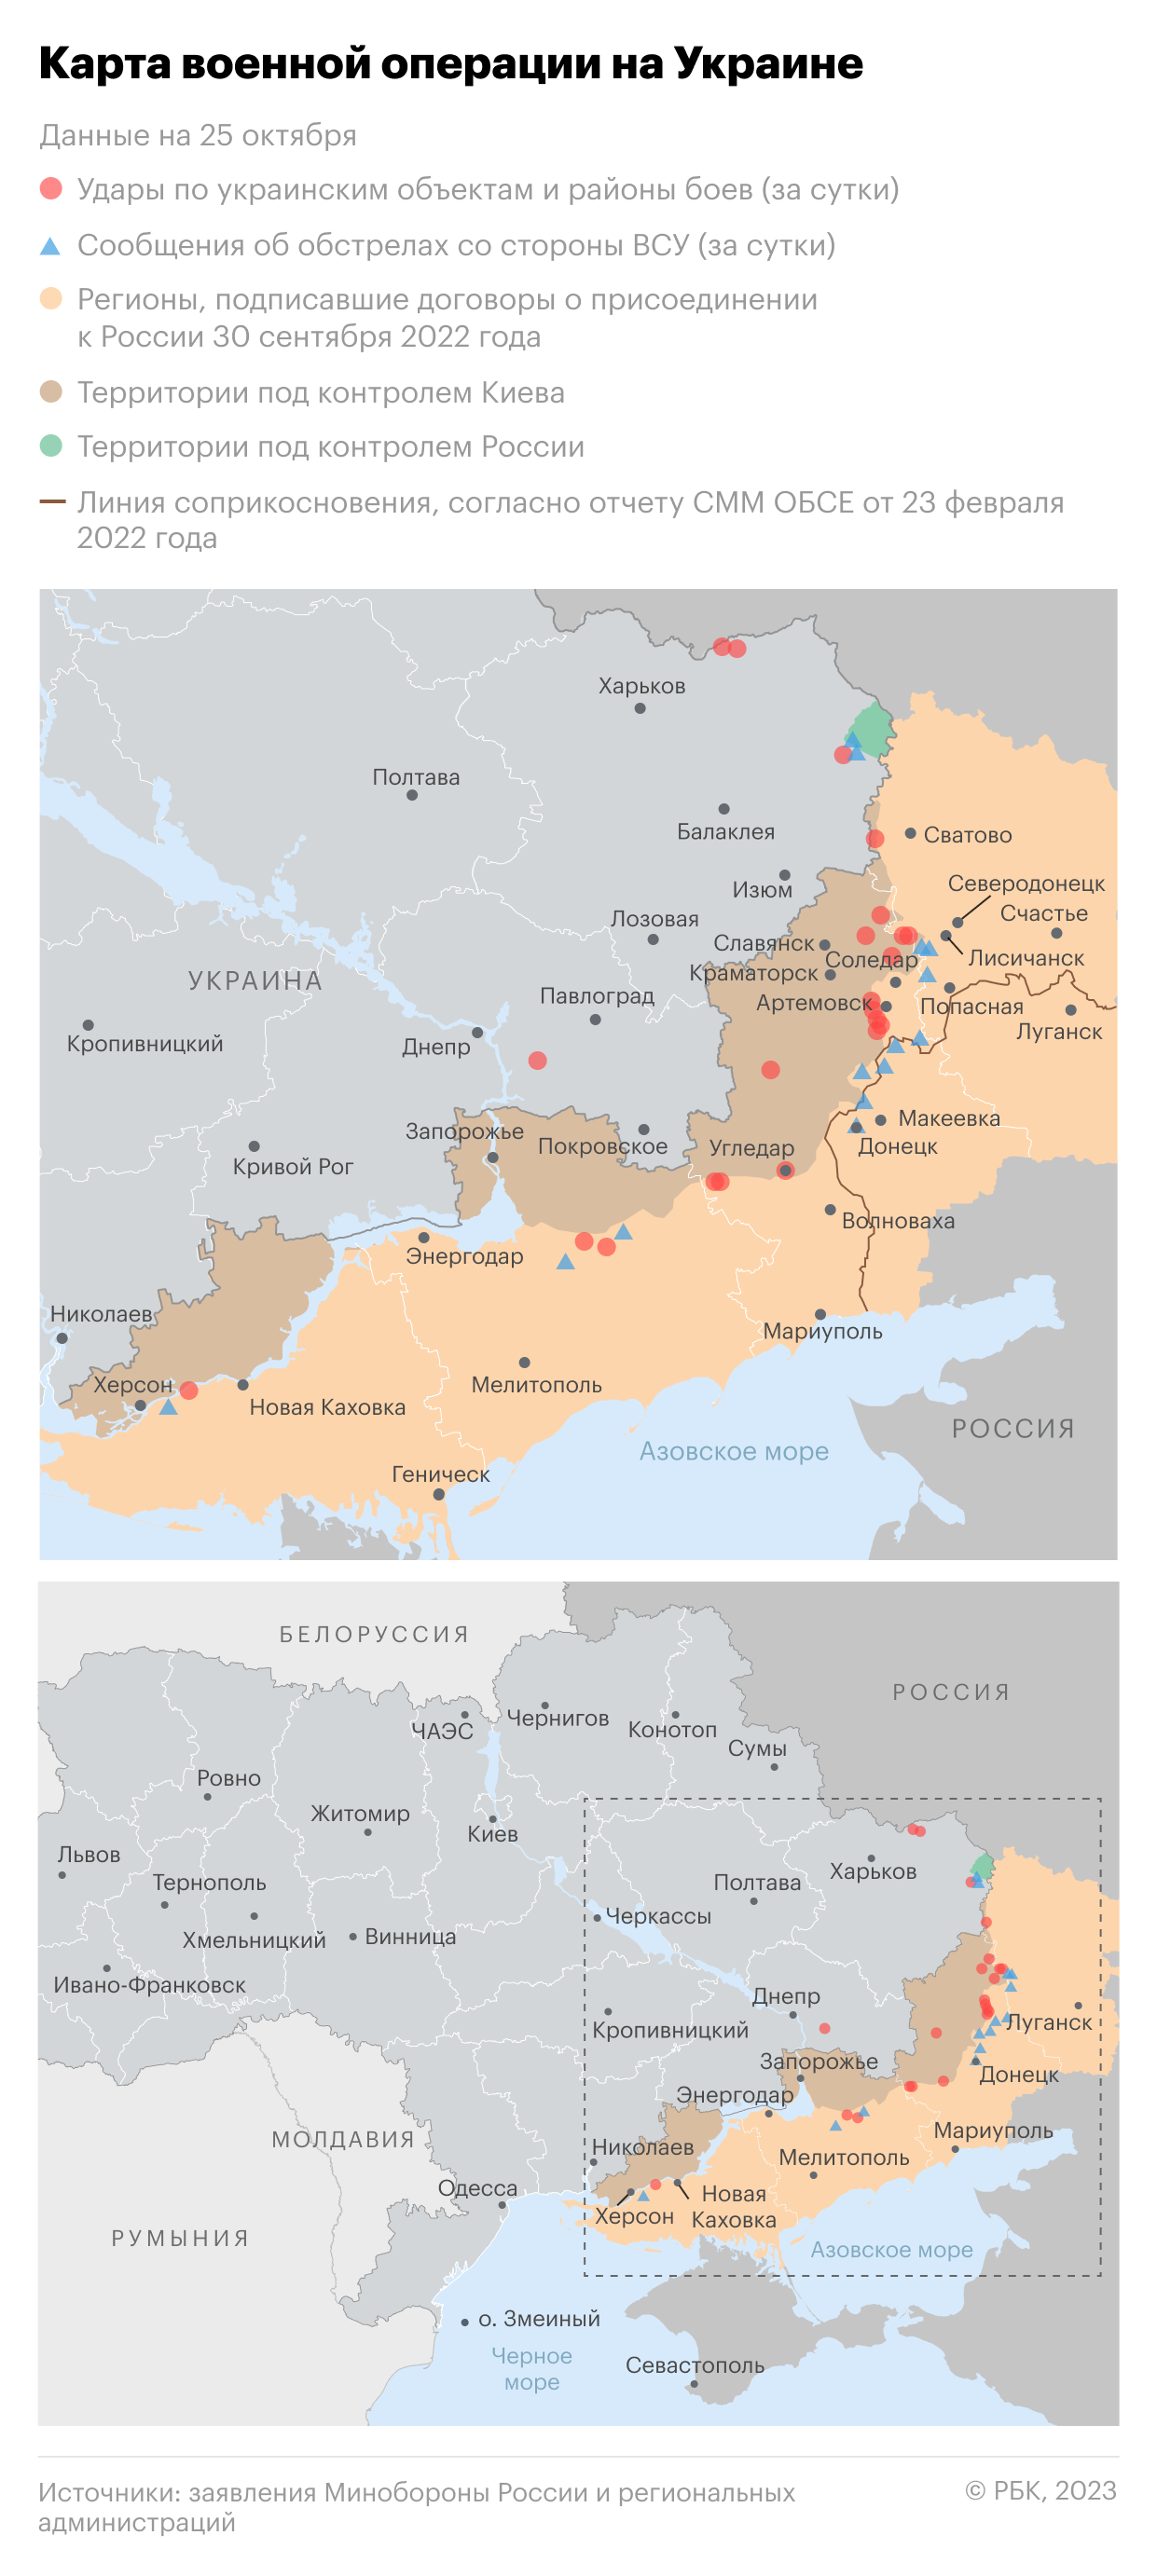 Военная операция на Украине. Карта на 25 октября